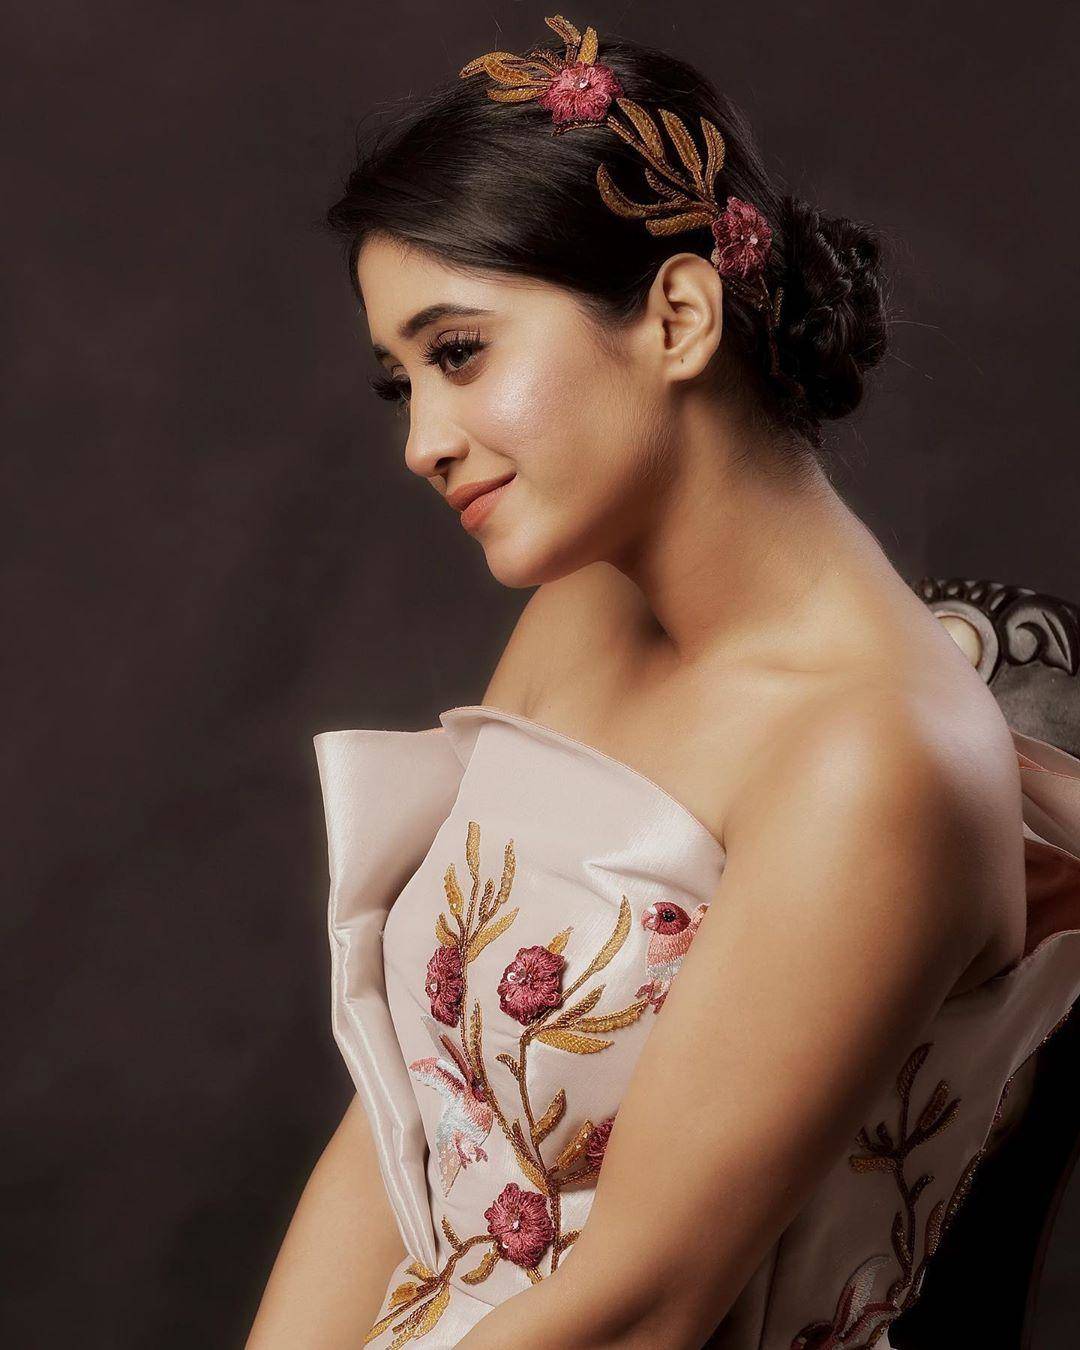 हिना खान की बेटी करेंगी Cannes 2020 के रेड कारपेट पर एंट्री